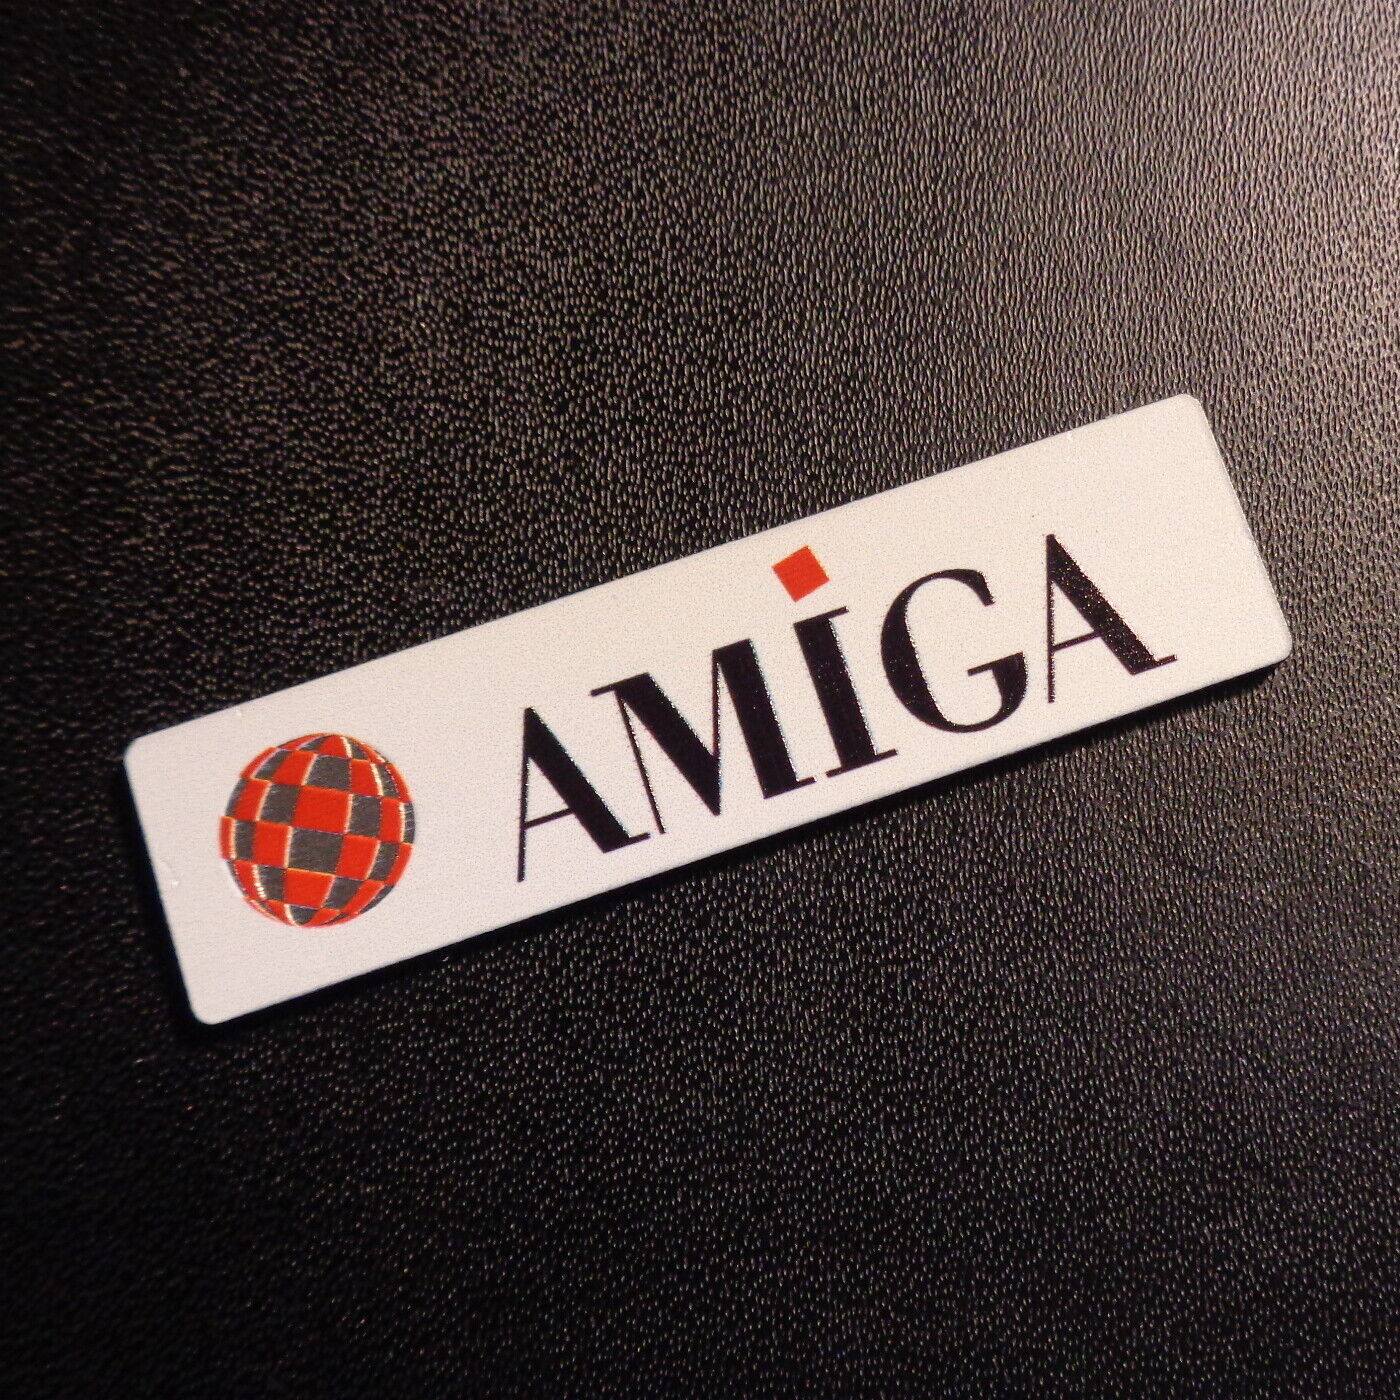 Commodore Amiga 600 1200 Ball Label / Logo / Sticker / Badge 49 x 13 mm [459]